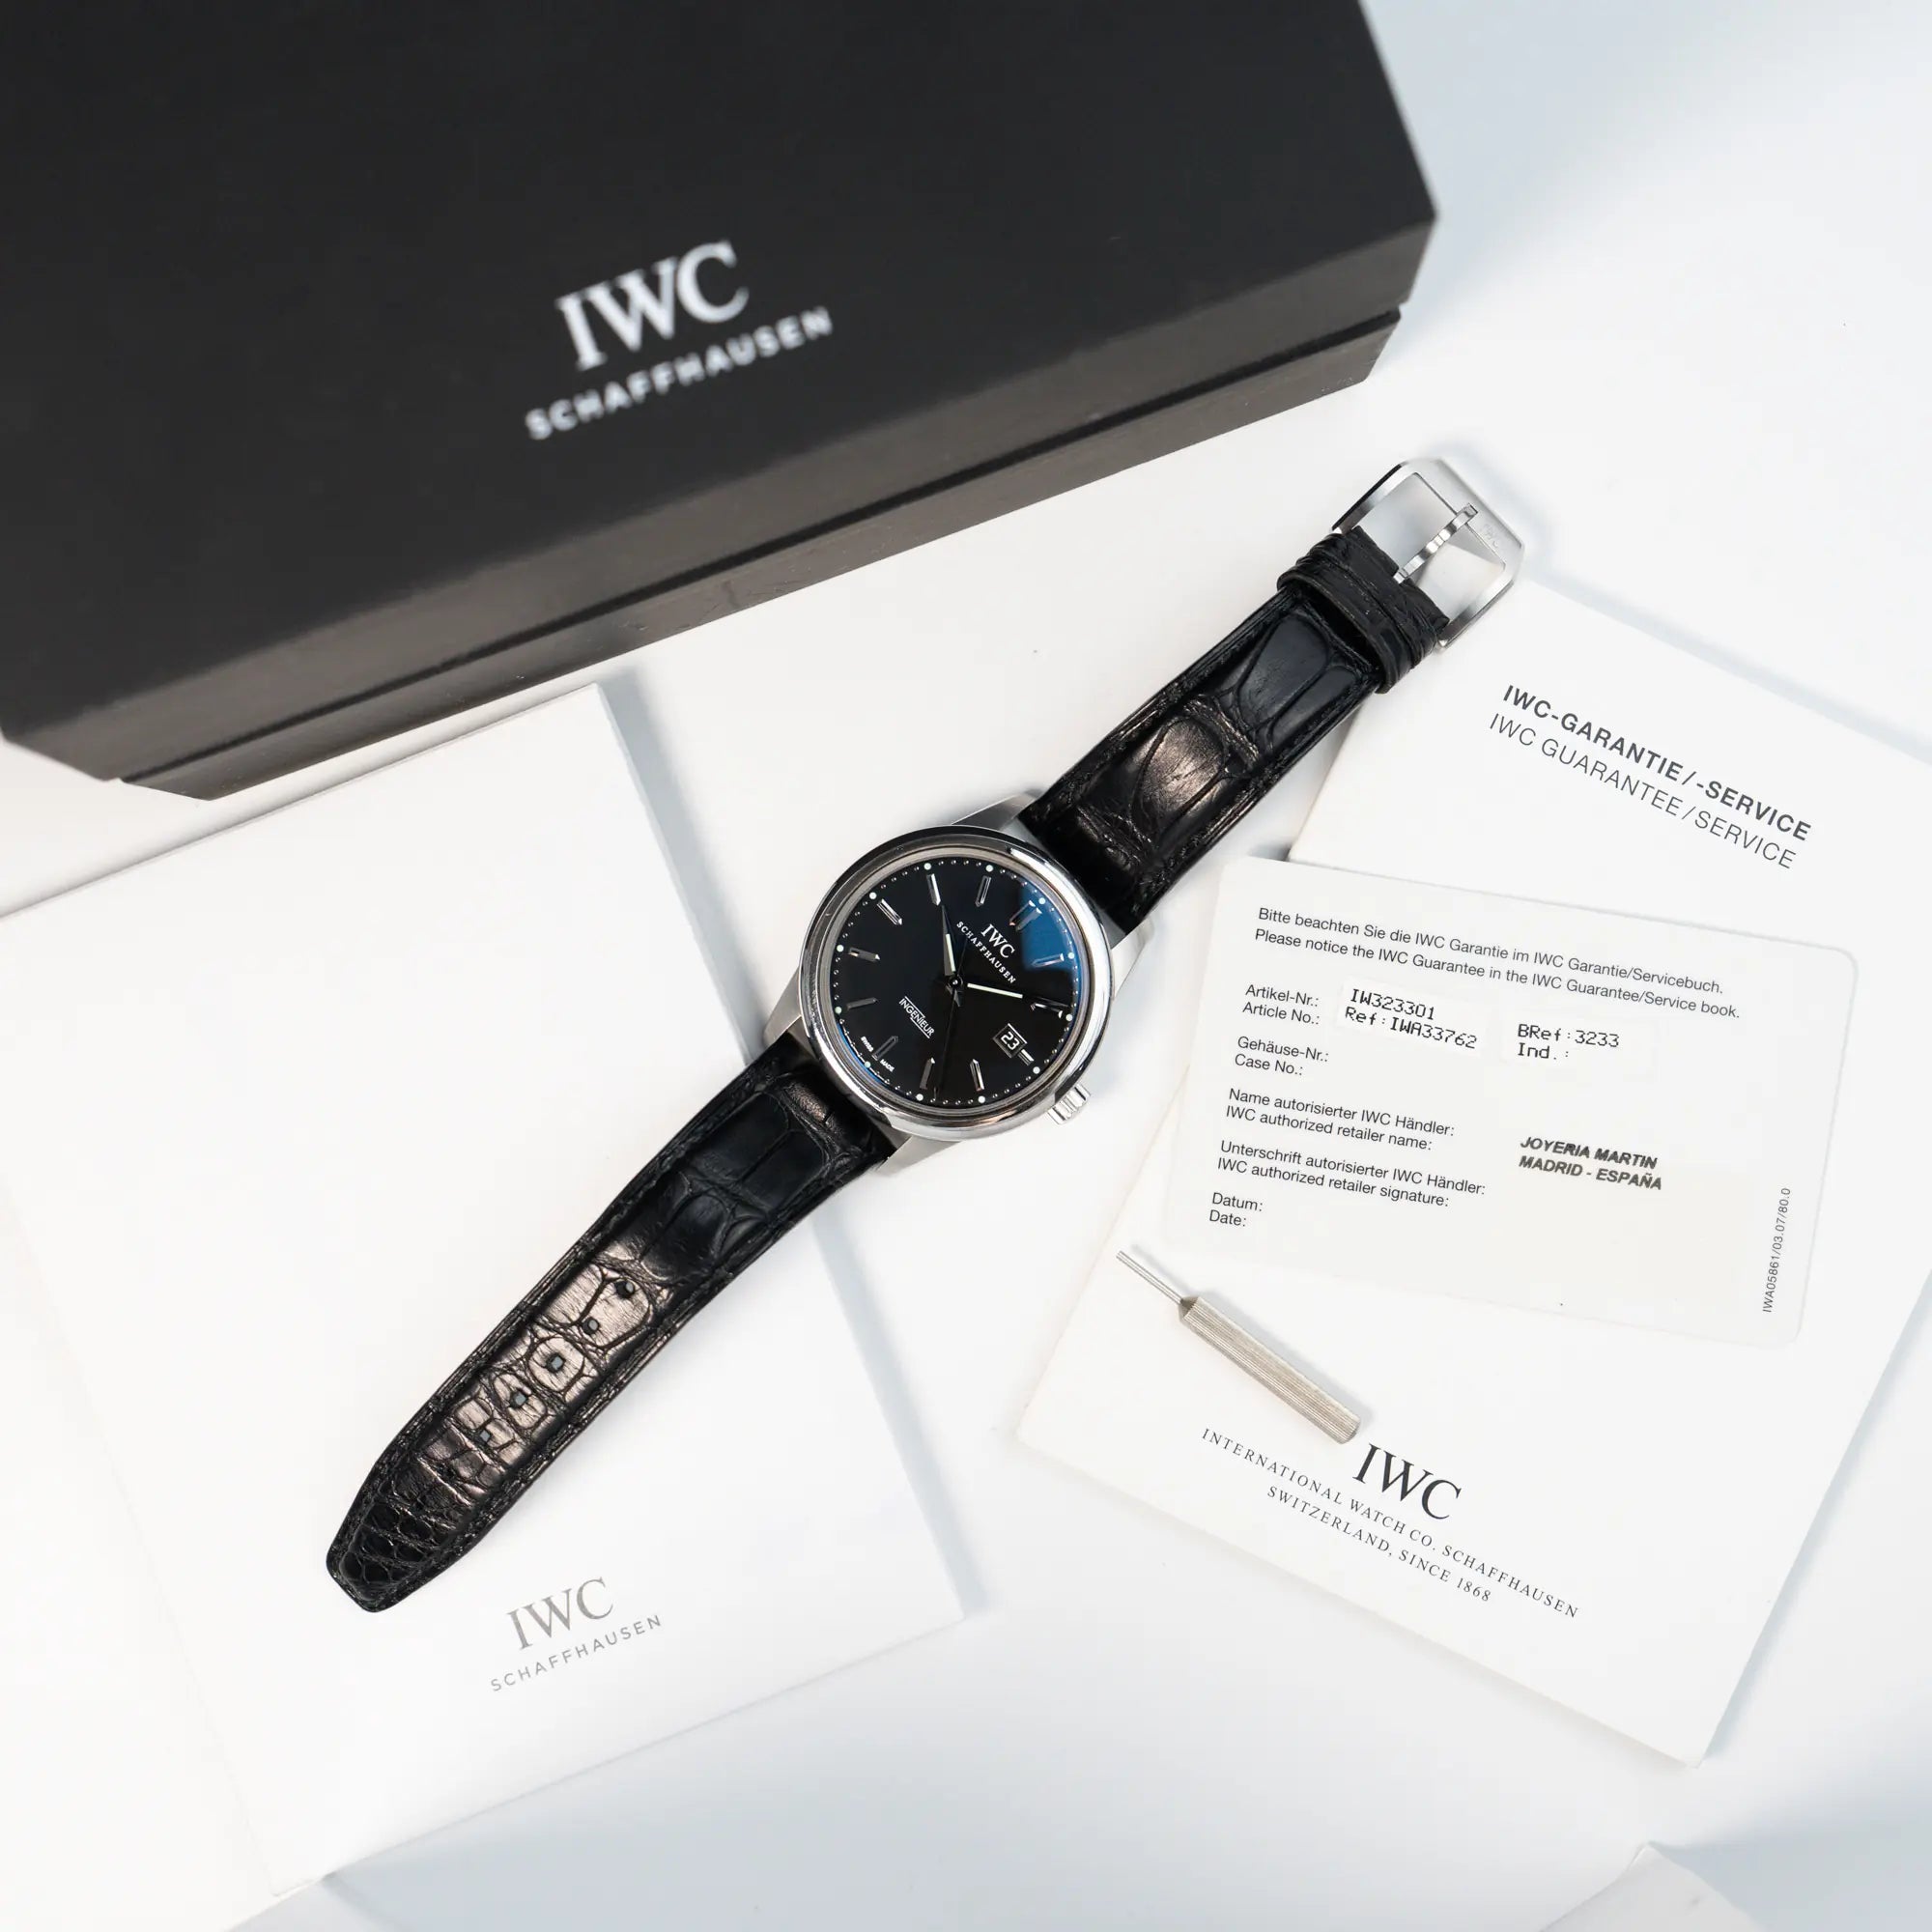 Lieferumfang zusammen mit der IWC Schaffhausen Uhr "Ingenieur" mit der Referenz IW323301 mit schwarzem Zifferblatt